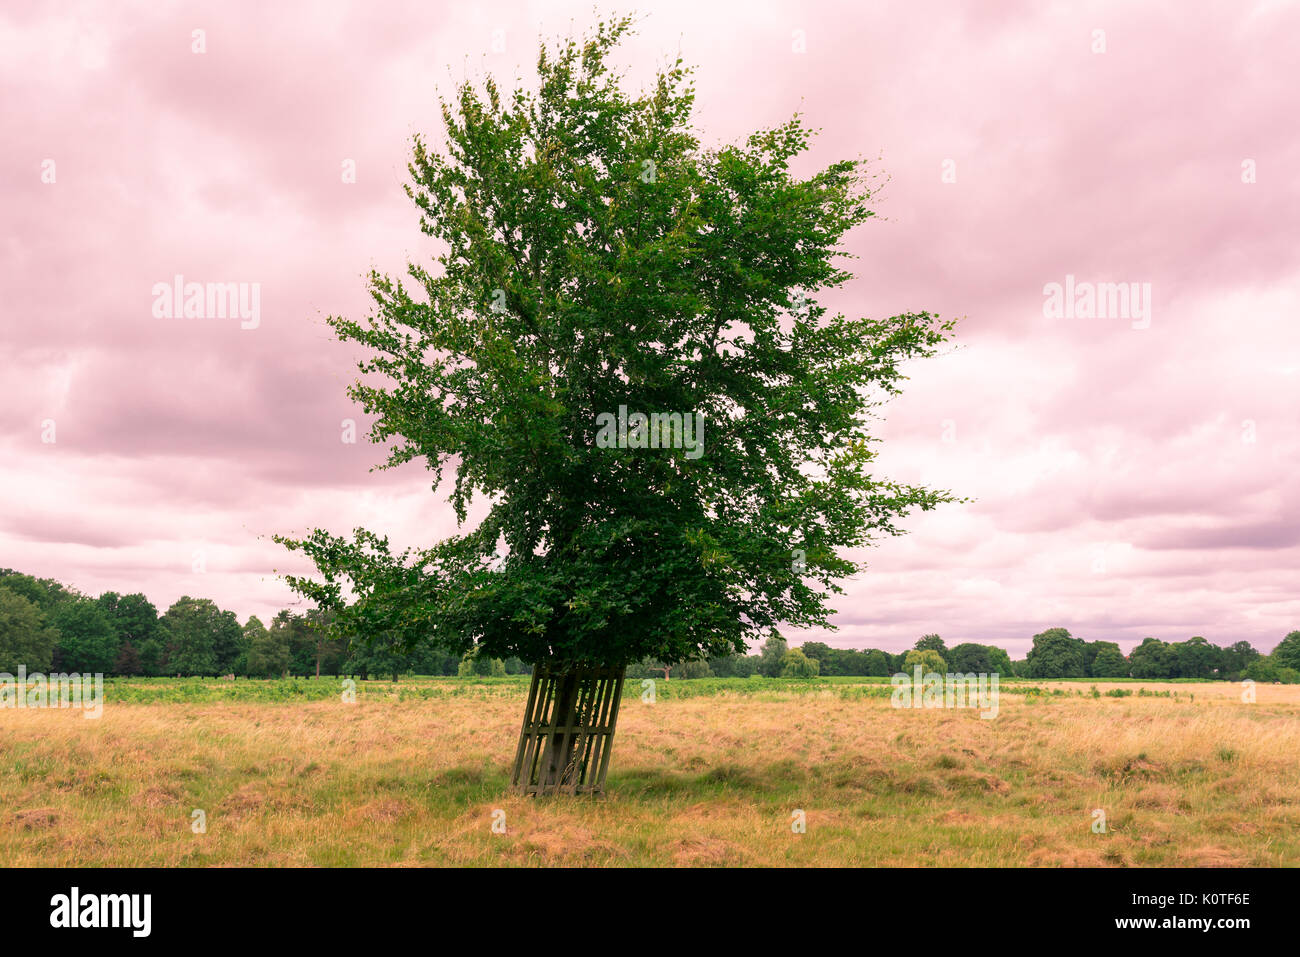 Einzelnen Baum in einem offenen Bereich mit Rosa bewölkter Himmel im Hintergrund. Instagram Wirkung. Stockfoto